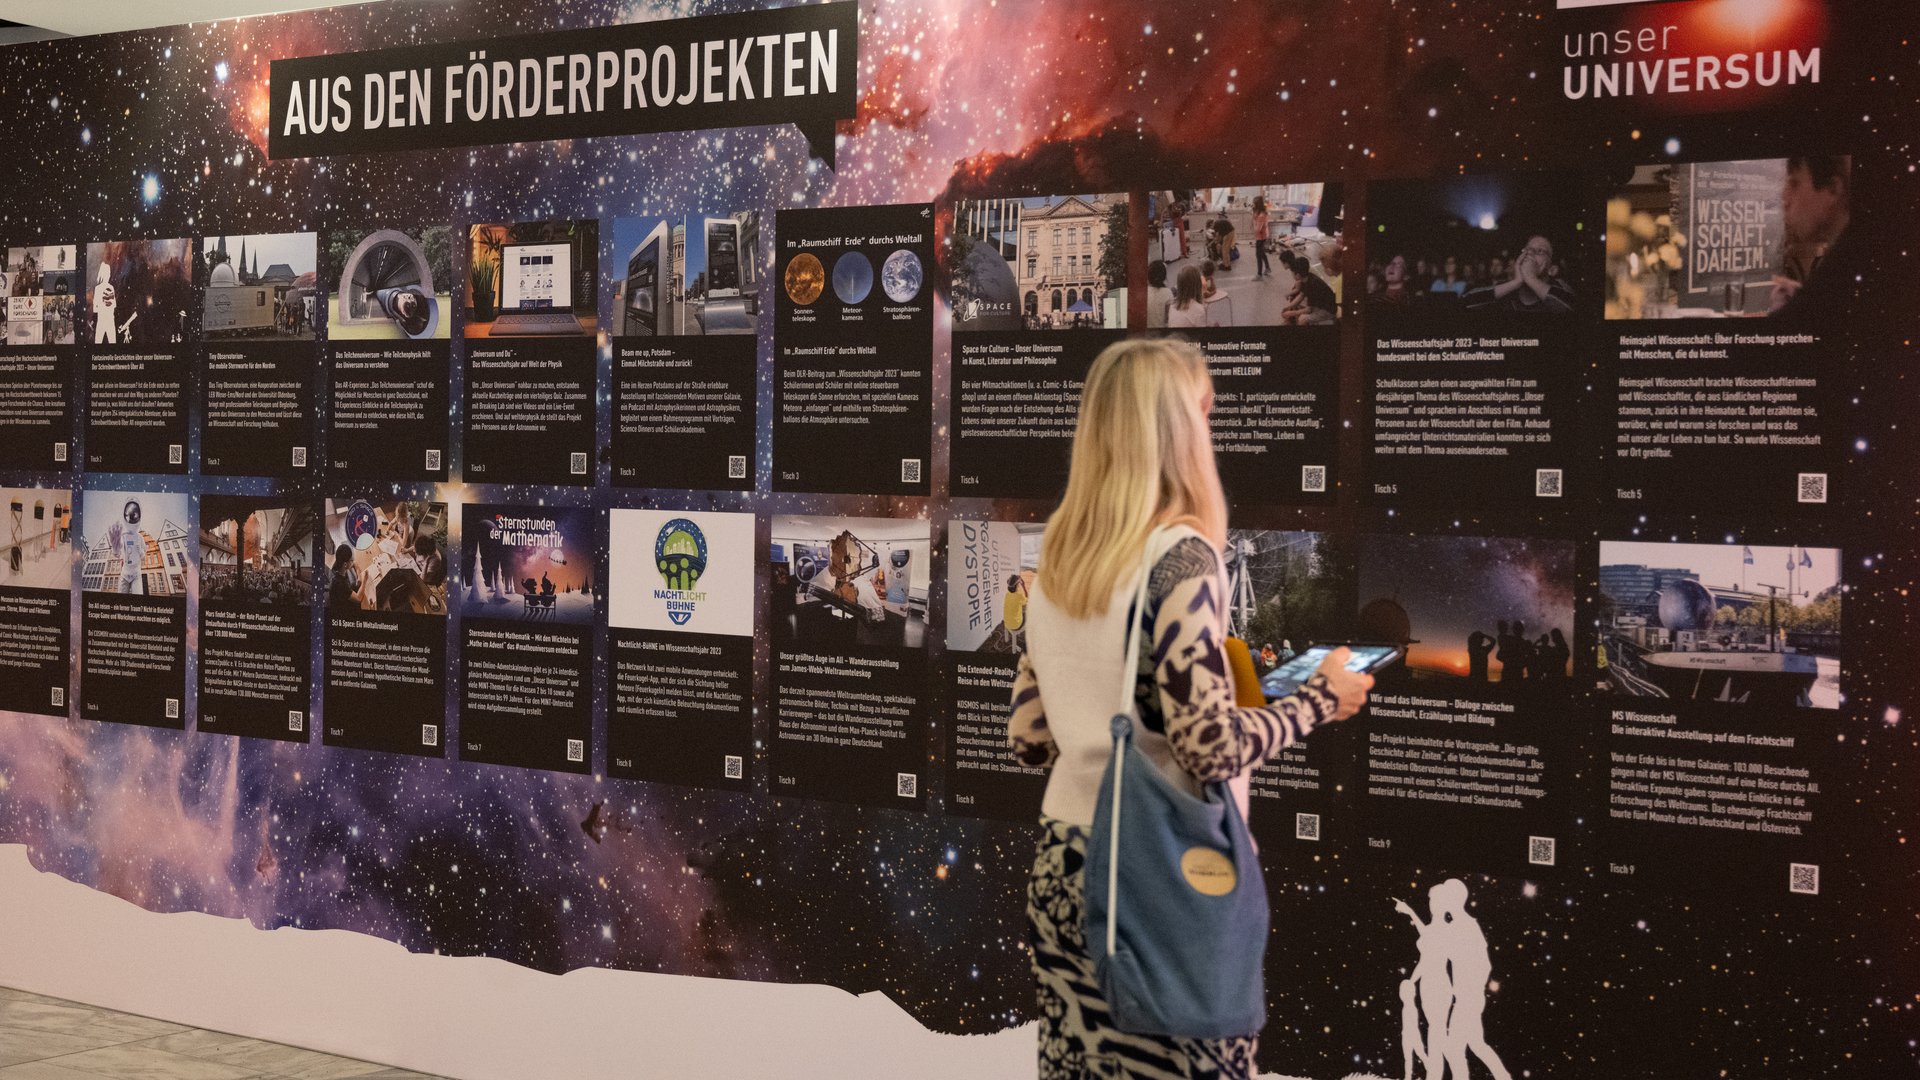 Eine Person steht vor einer Wand mit der Aufschrift "Aus den Förderprojekten". Darunter sind die Highlights der Förderprojekte mit Fotos abgebildet.